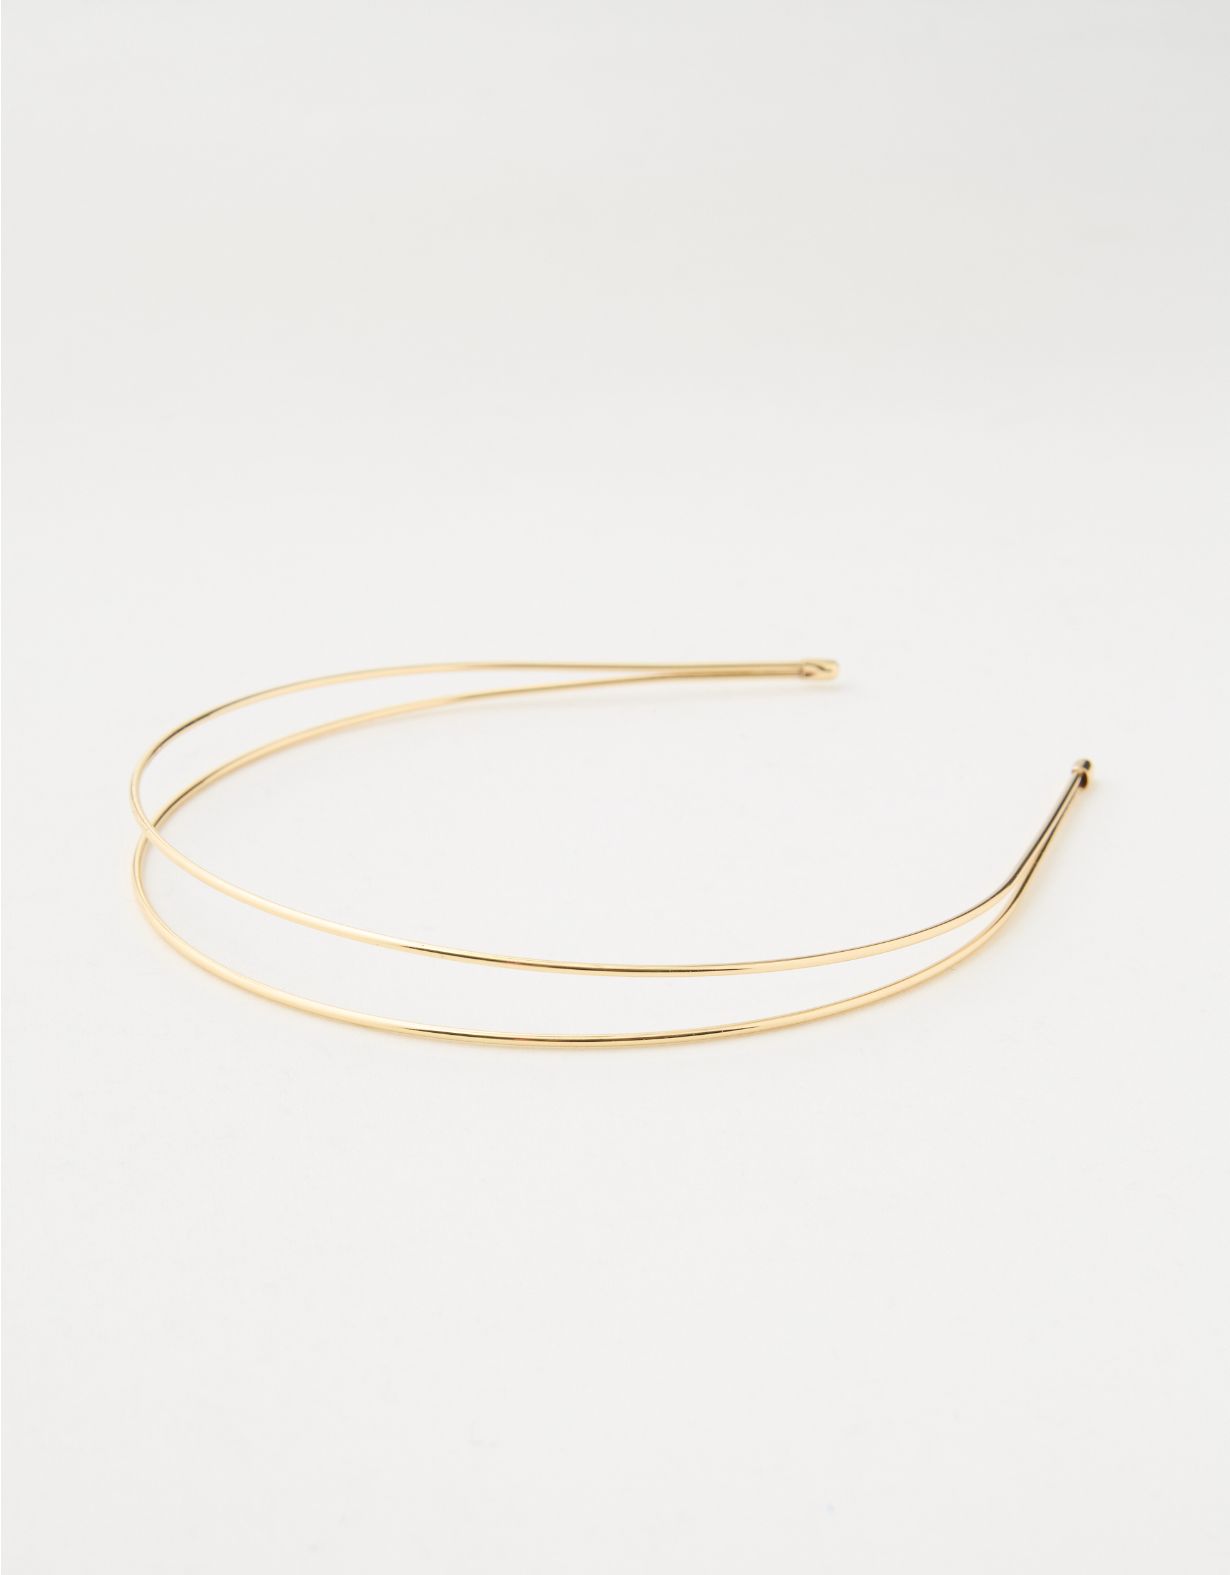 Aerie Gold Wire Headband